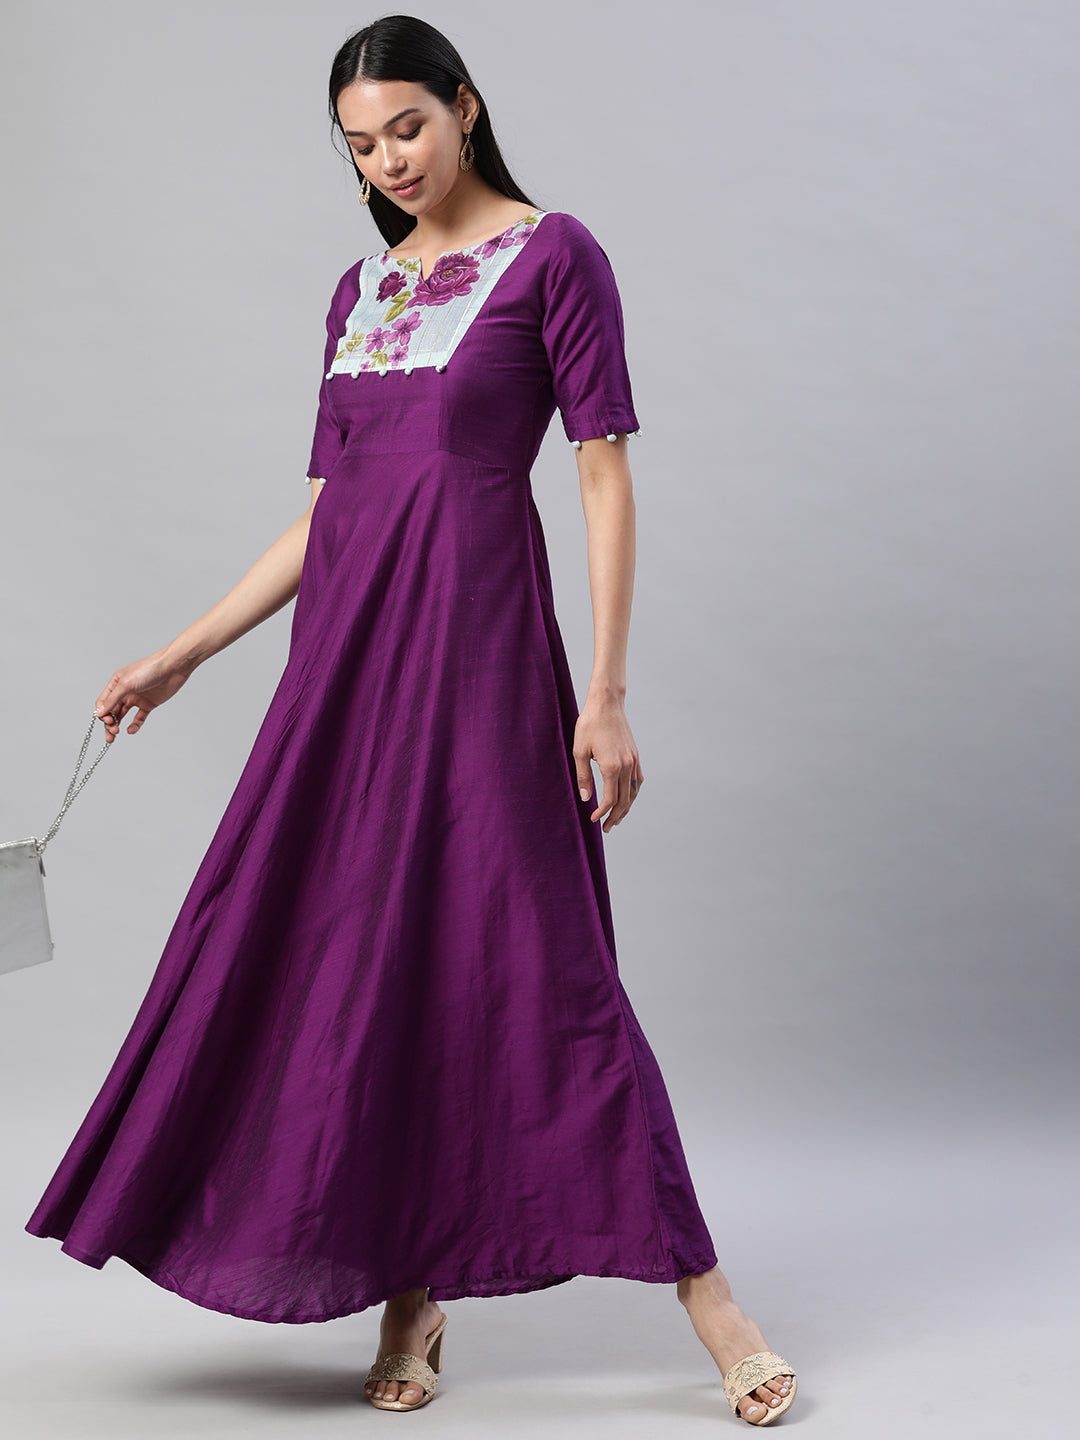 Ethnic Long Dress Women - Women's Clothing - Temu